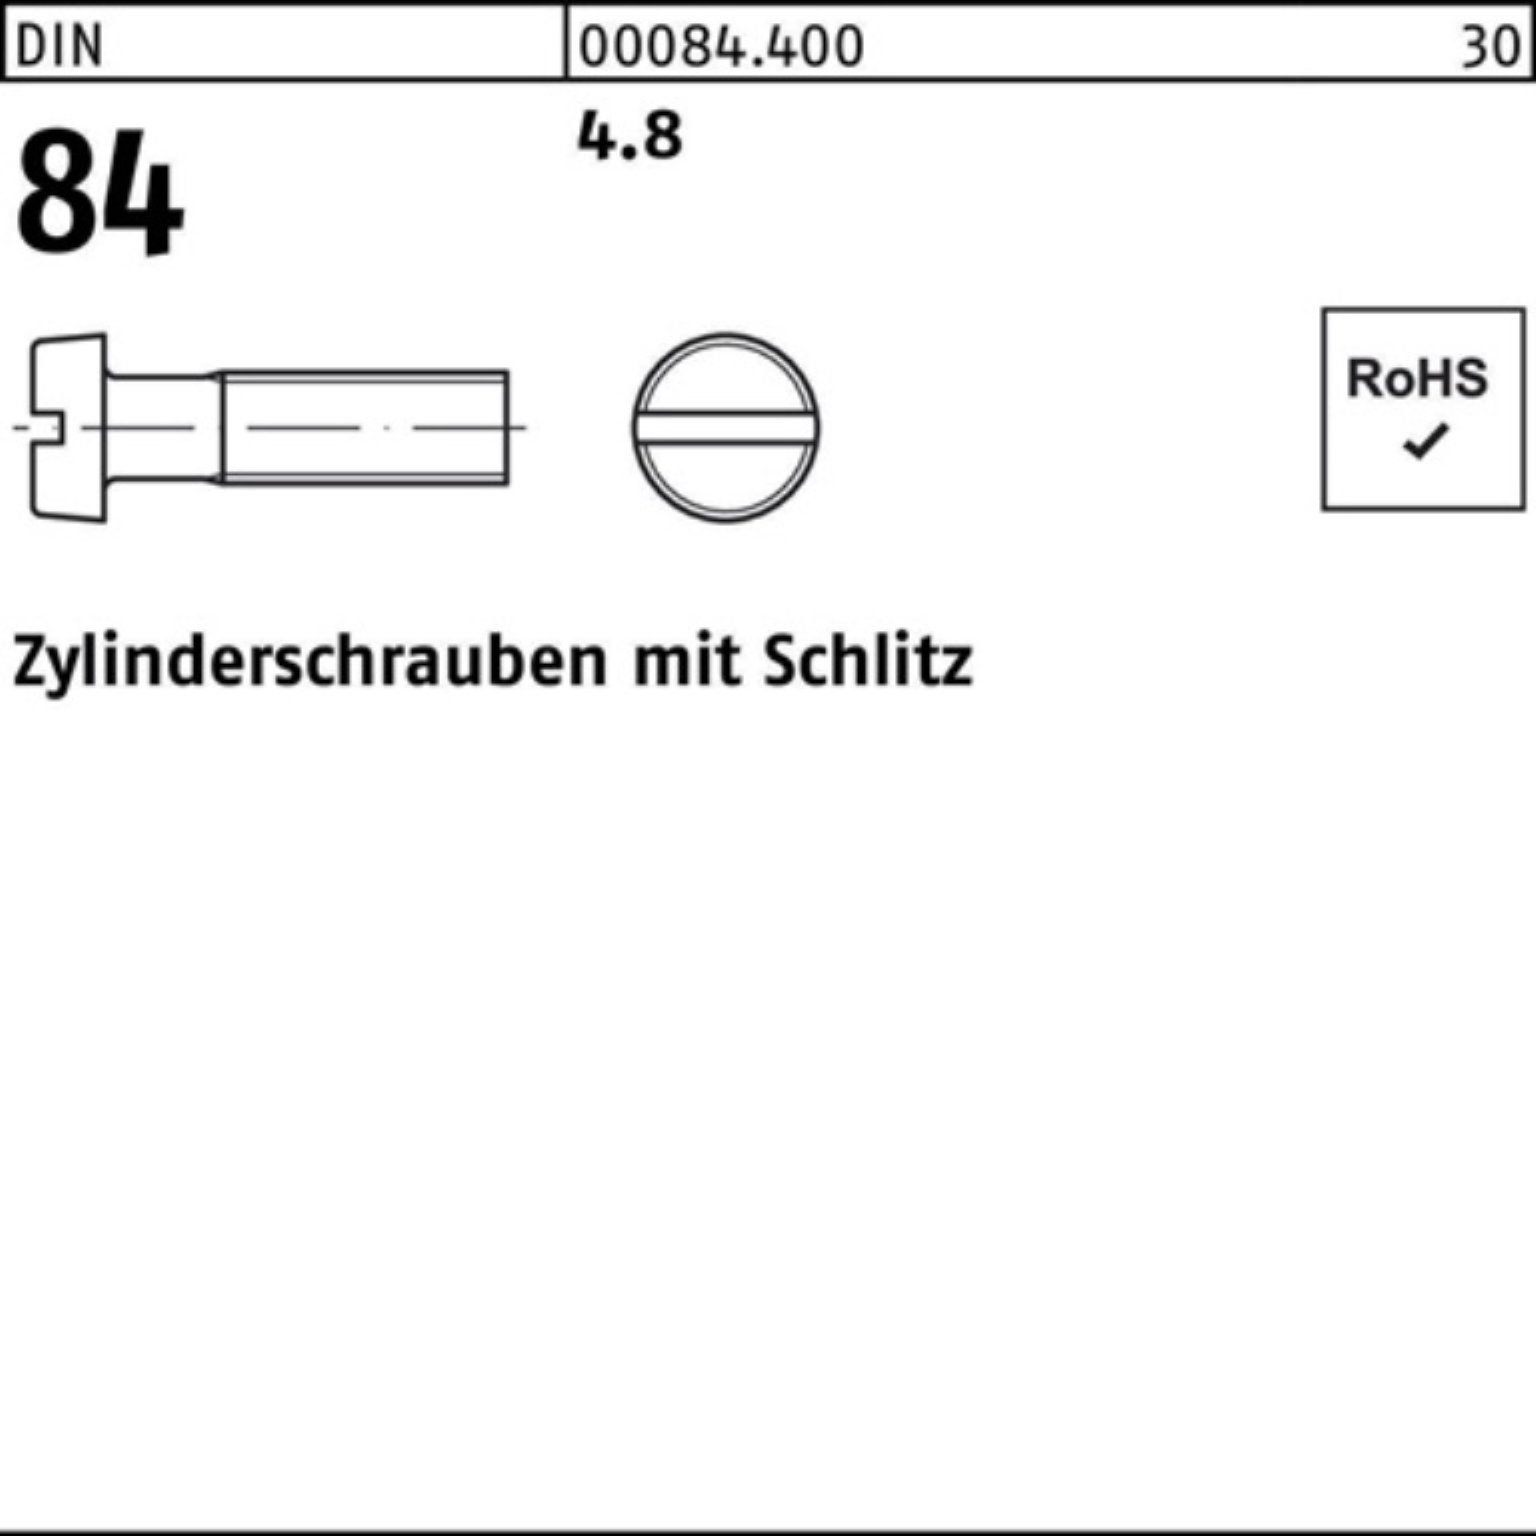 Reyher Zylinderschraube 1000er 1207 4.8 1000 30 DIN M4x Schlitz Pack 84/ISO S Zylinderschraube